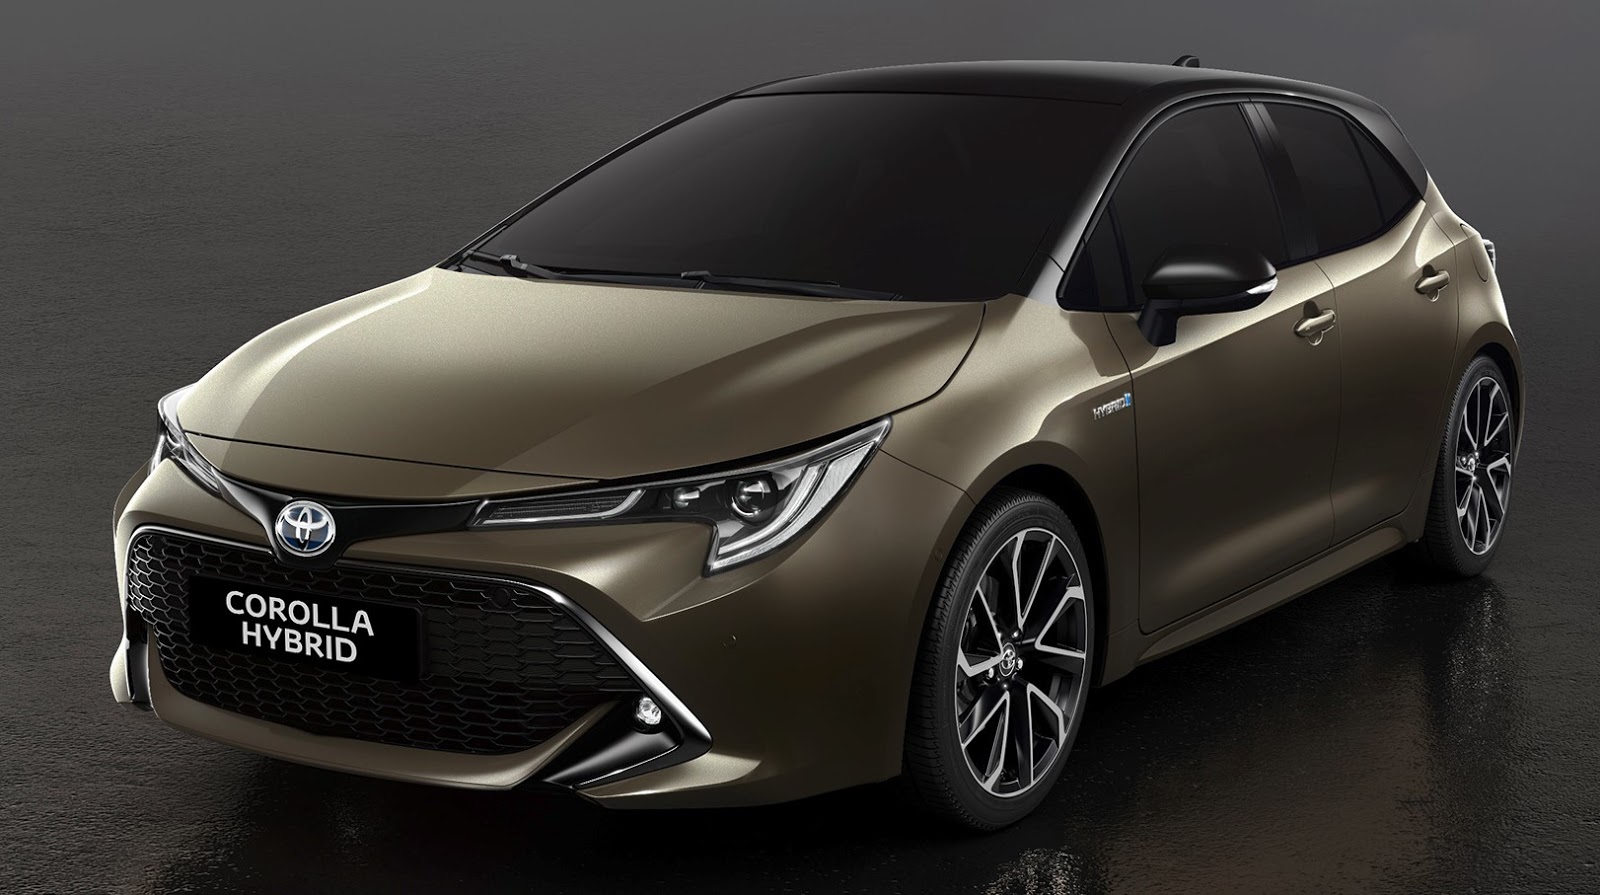 Toyota Corolla estreia nova geração no Salão de Genebra